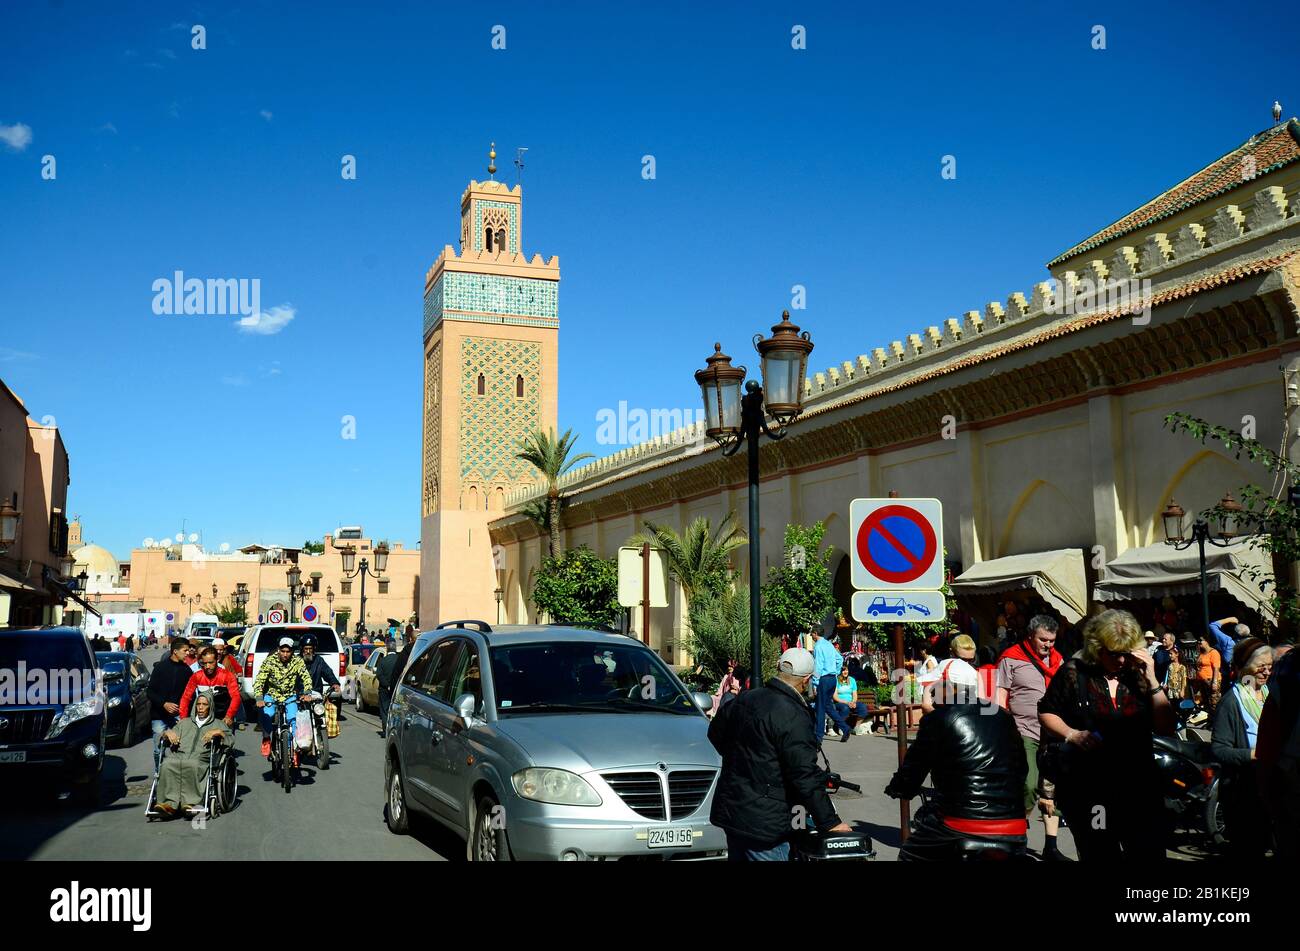 Marrakech, Maroc - 22 novembre 2014 : personnes non identifiées avec vélo, vélo et chaise non valide, mosquée avec minaret dans la structure traditionnelle Banque D'Images